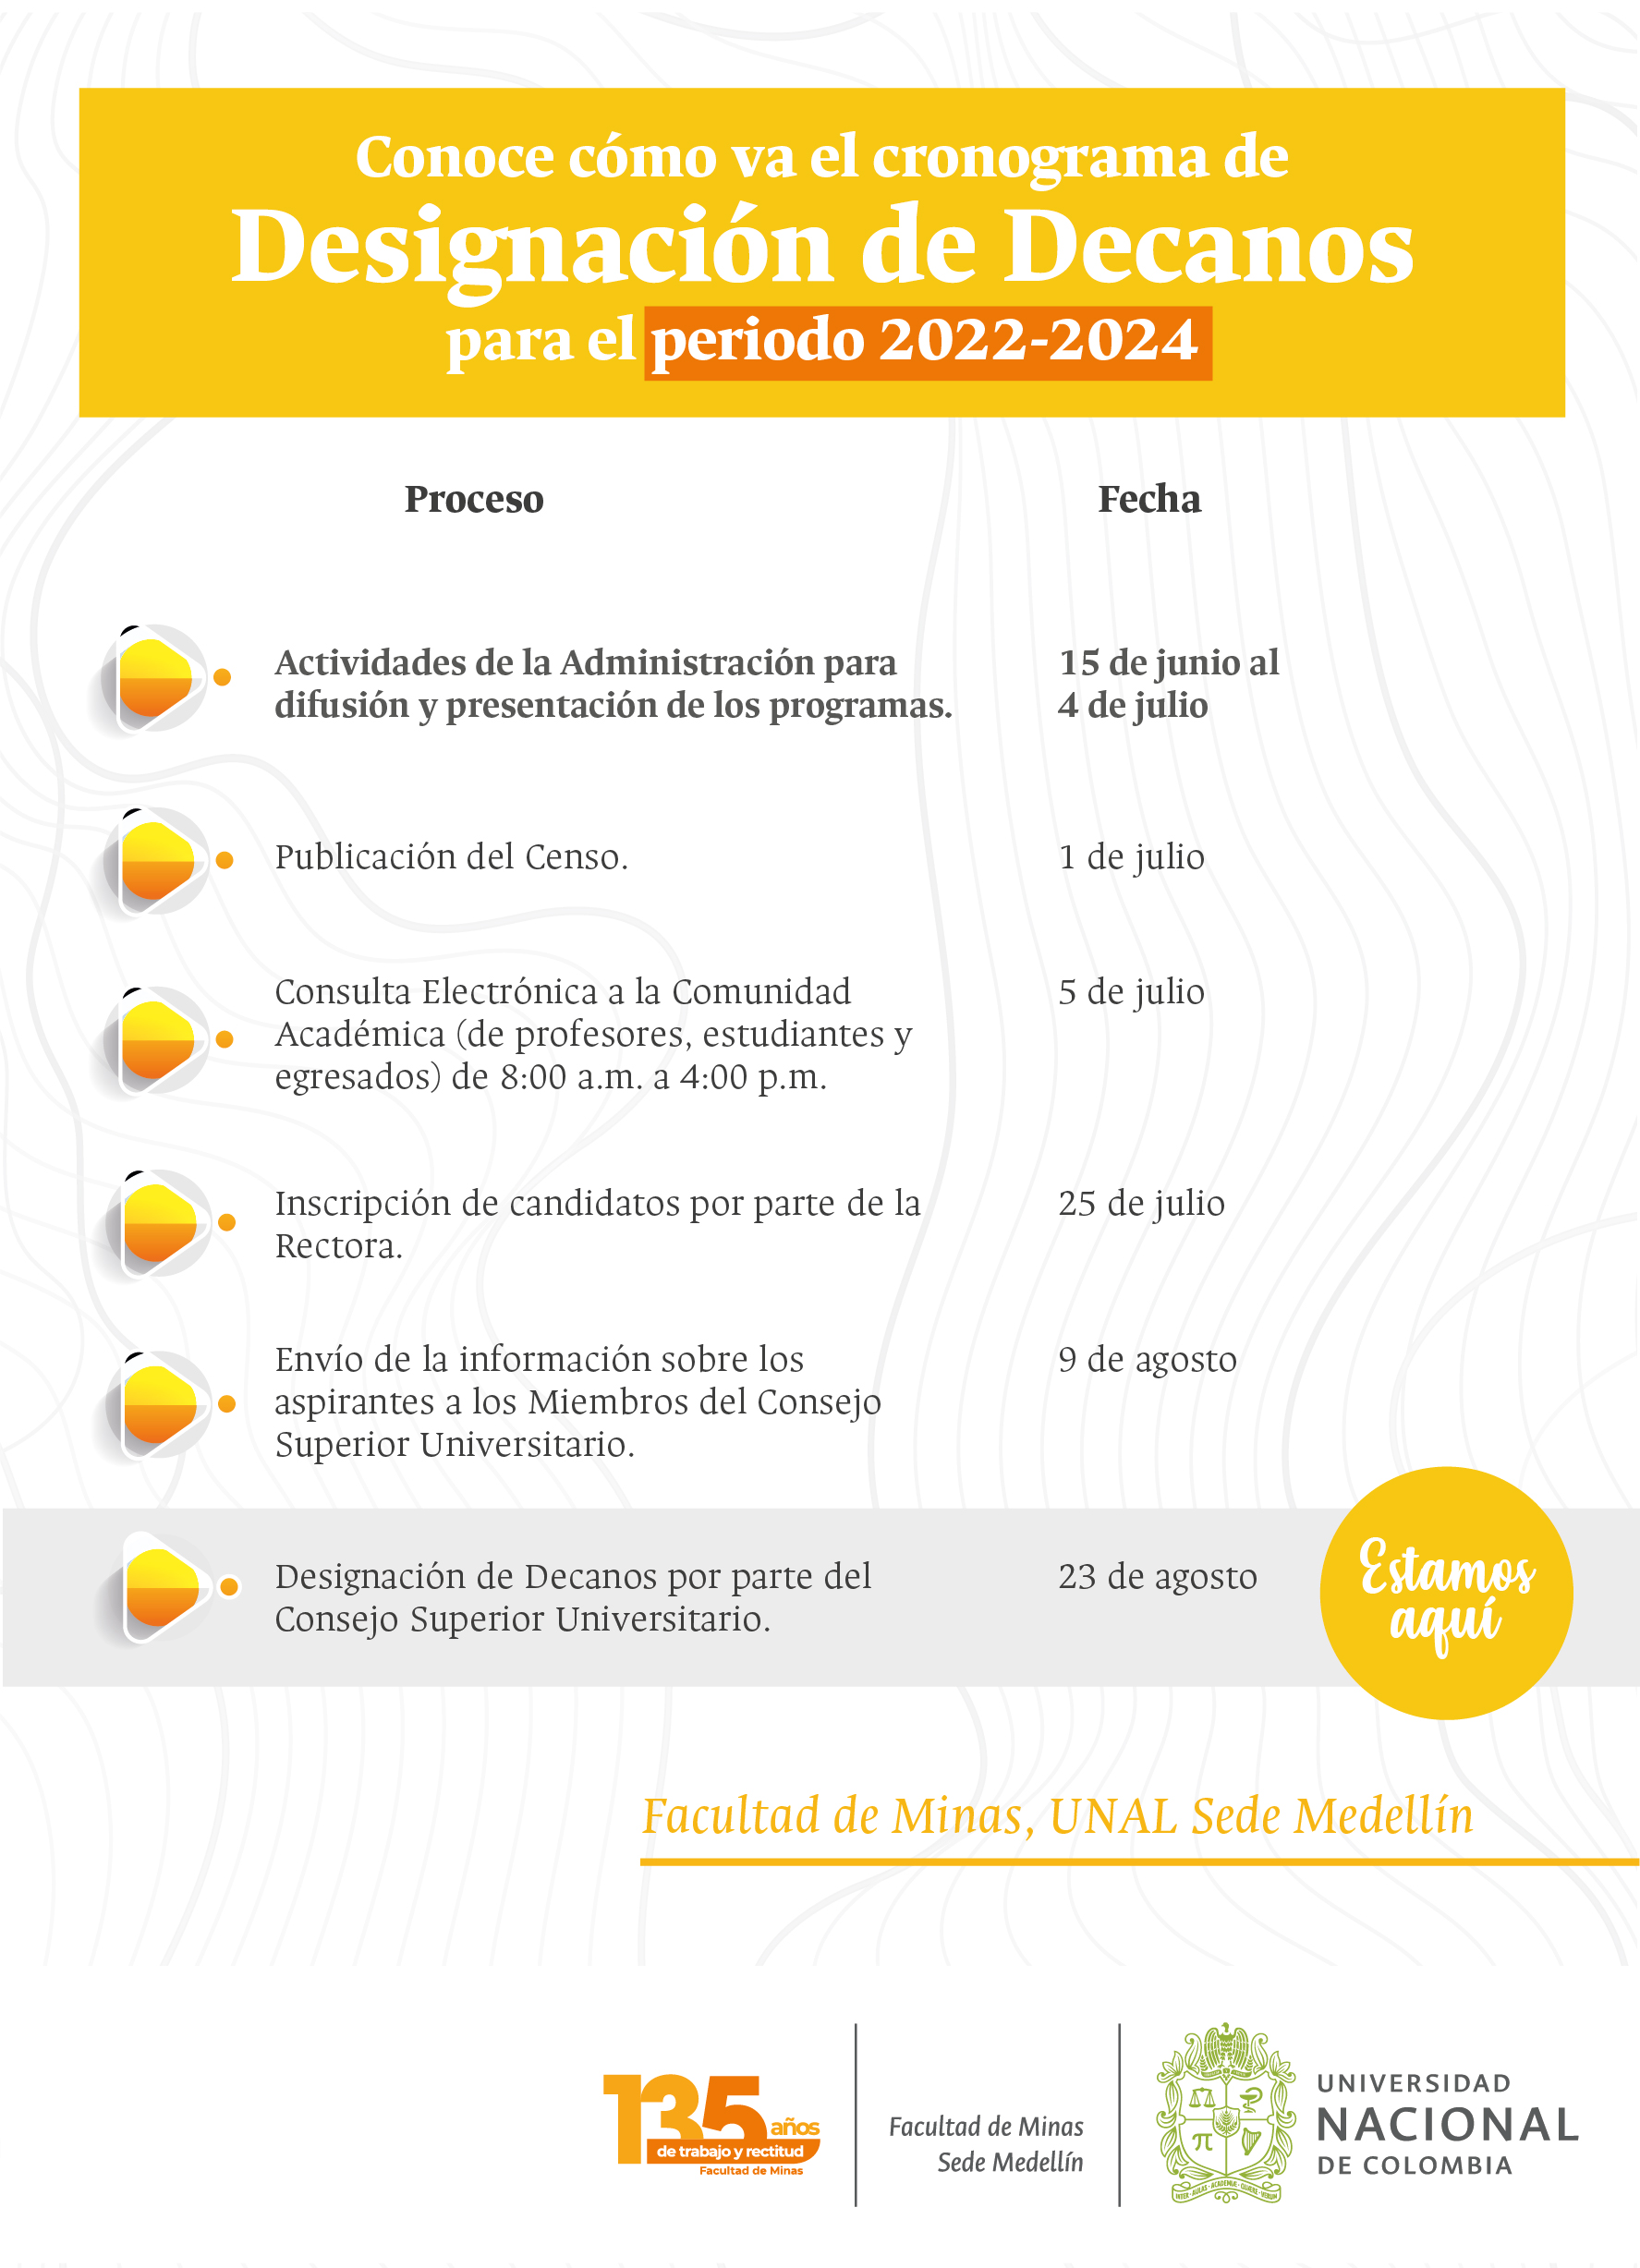 Cronograma del proceso de designación de Decanos de la Facultad de Minas de la Universidad Nacional de Colombia para el periodo 2022-2024